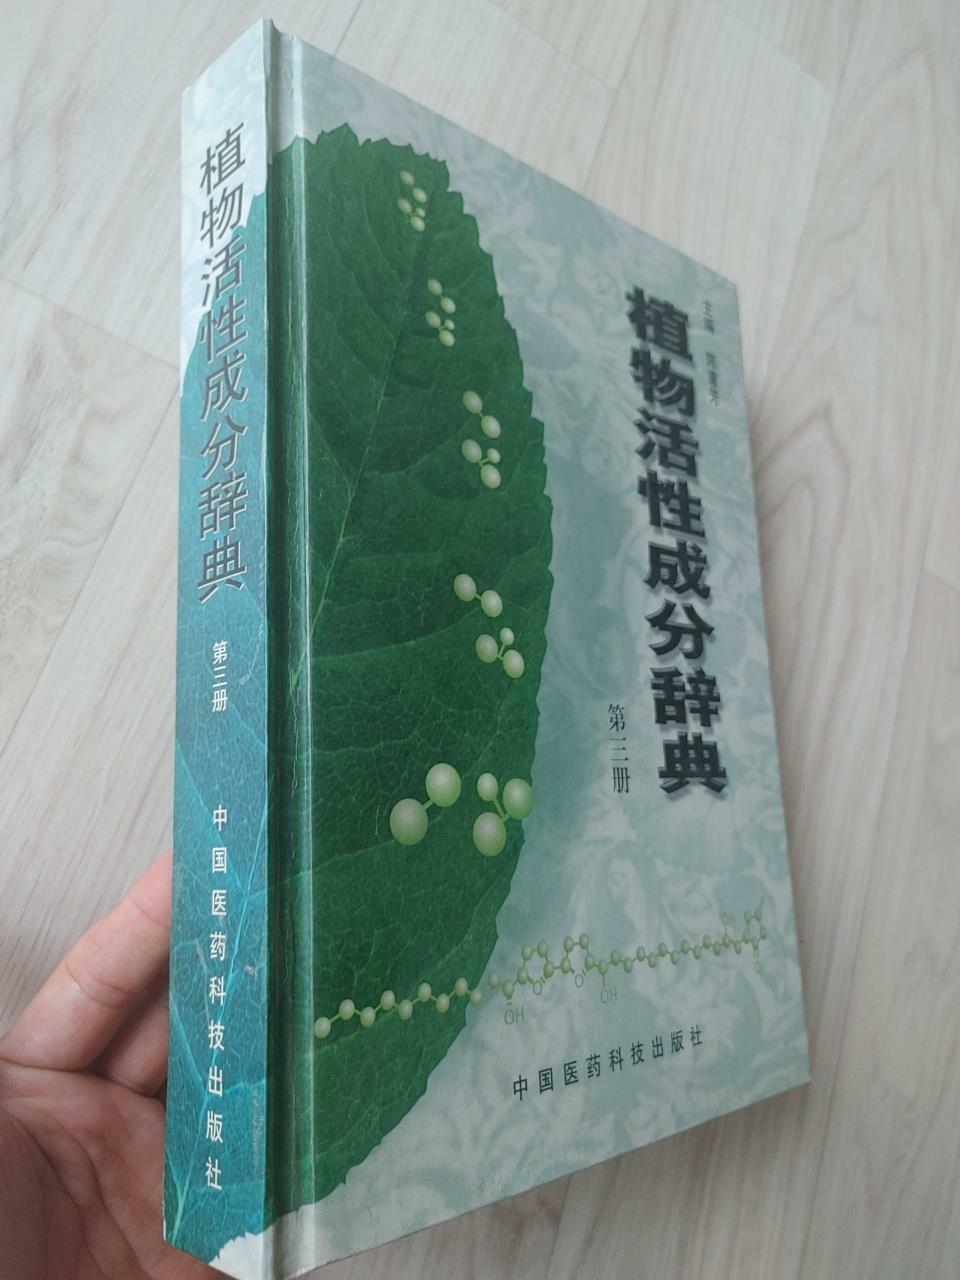 [중고] 植物活性成分辞典（第 三册), 陈蕙芳, 中国医药科技出版社, 2001 (양장)